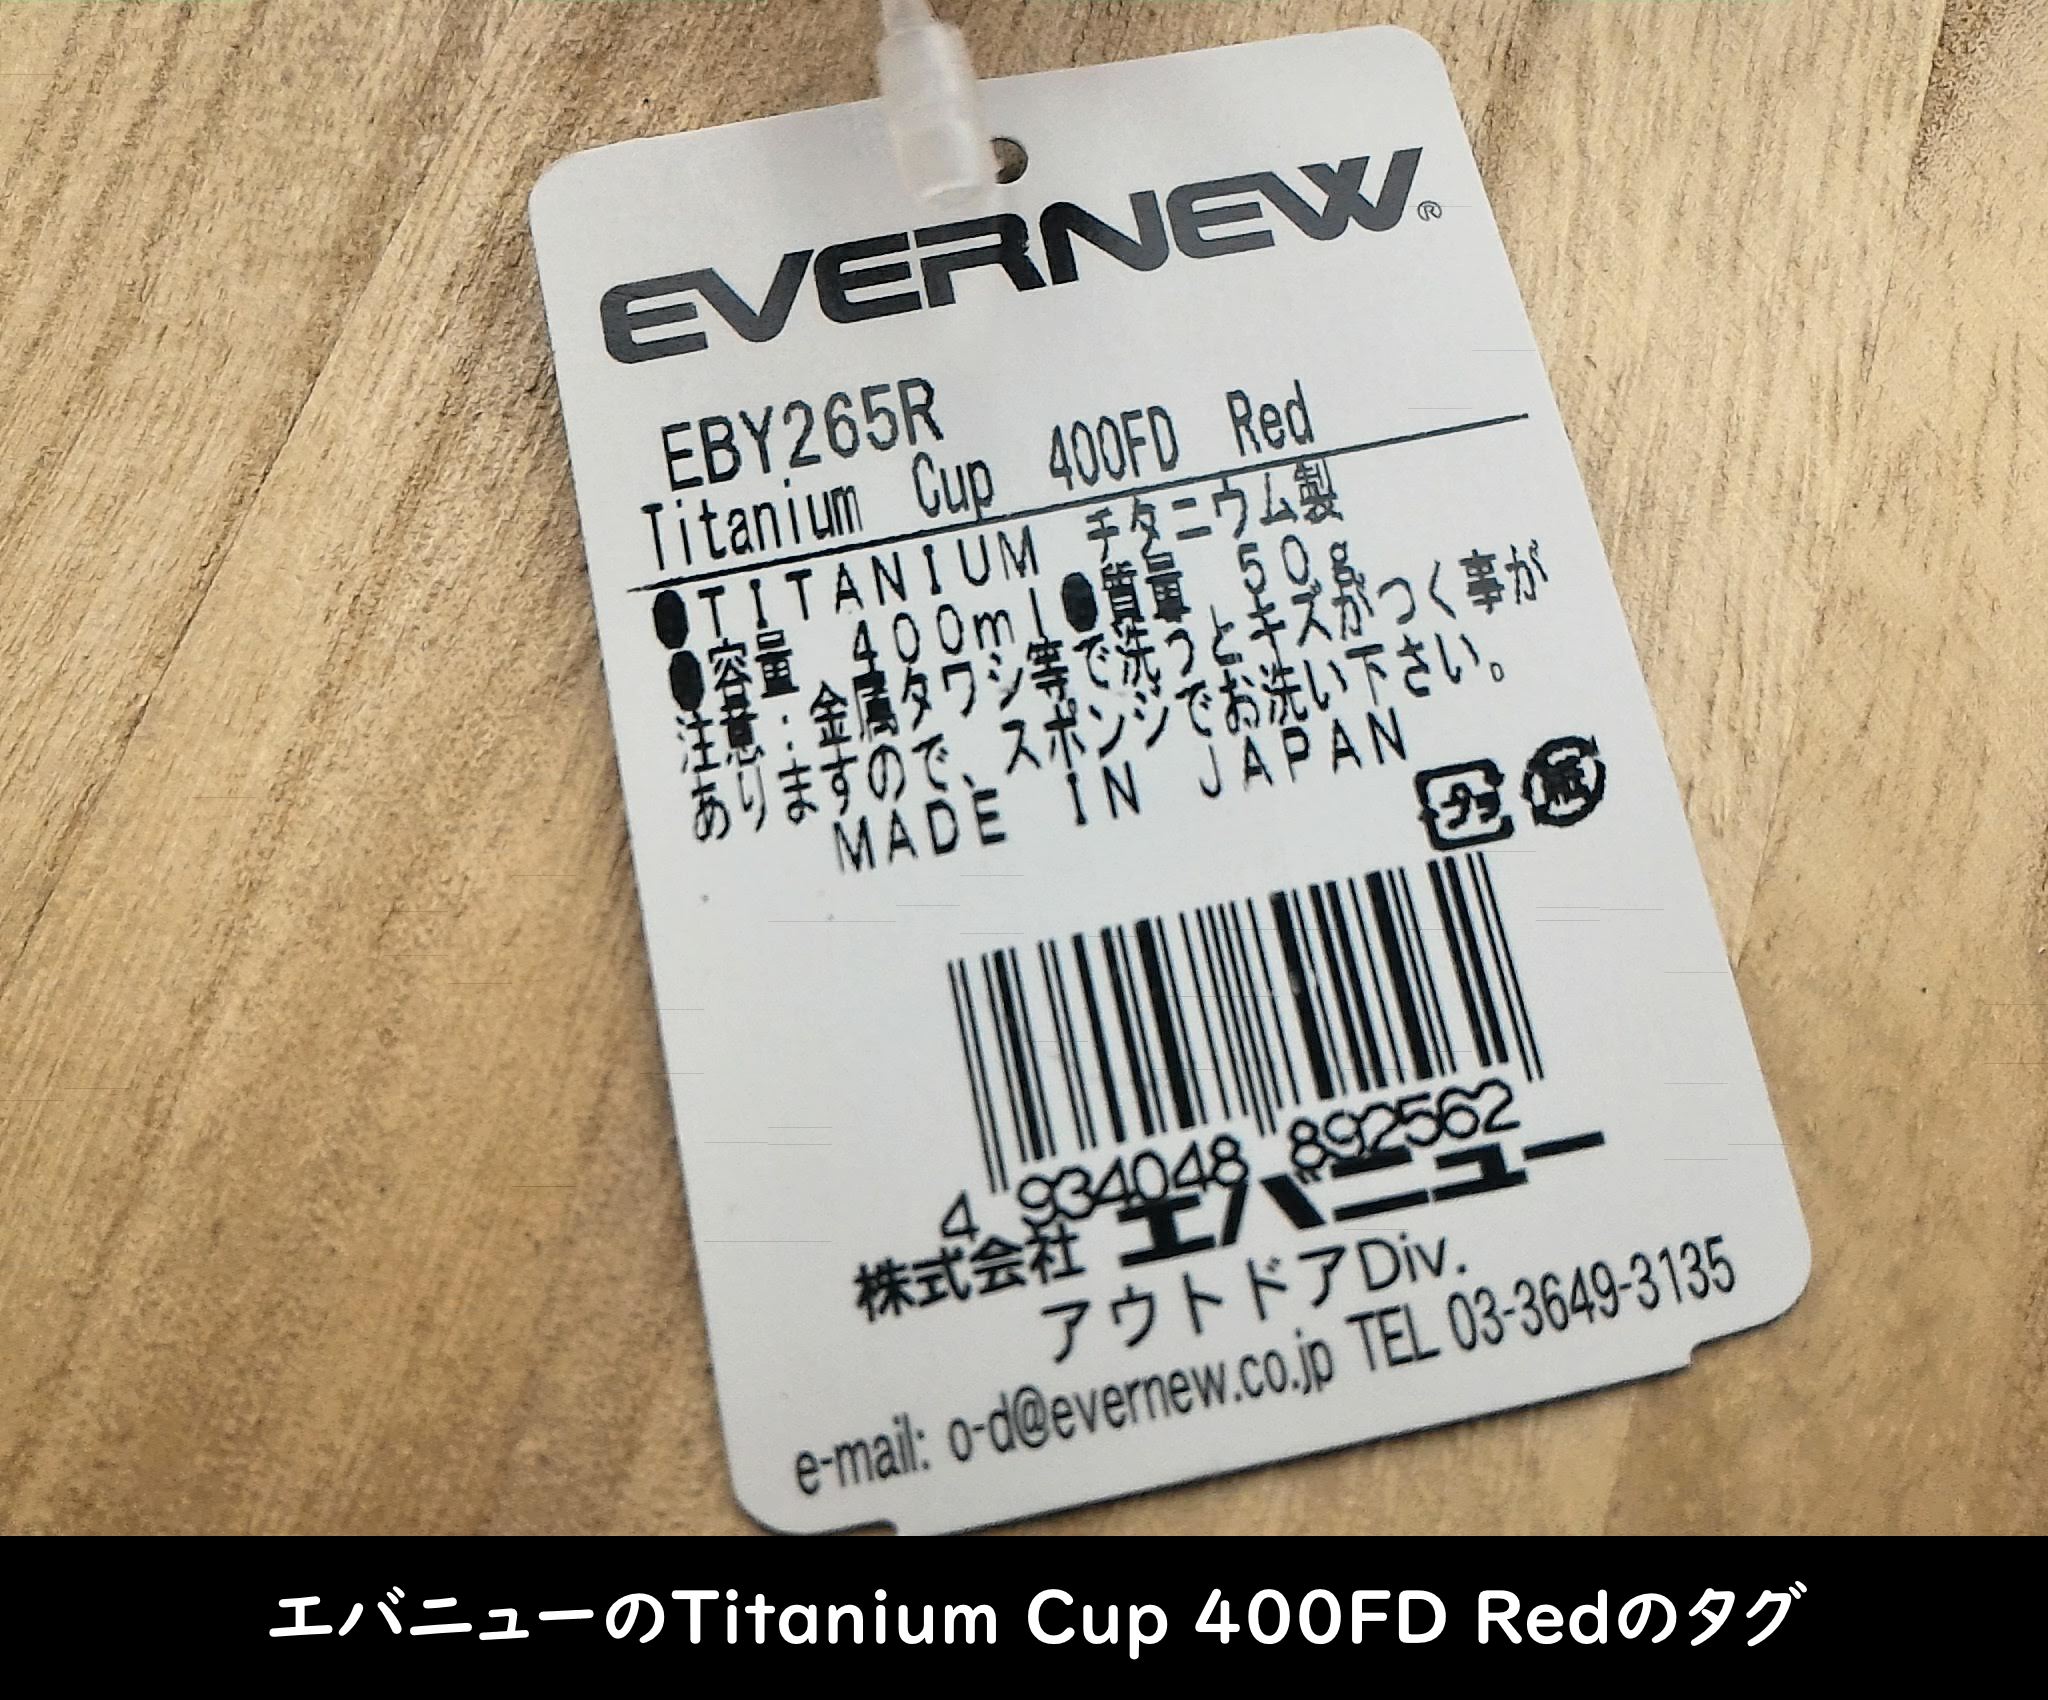 エバニューの「Titanium Cup 400FD Red」タグ